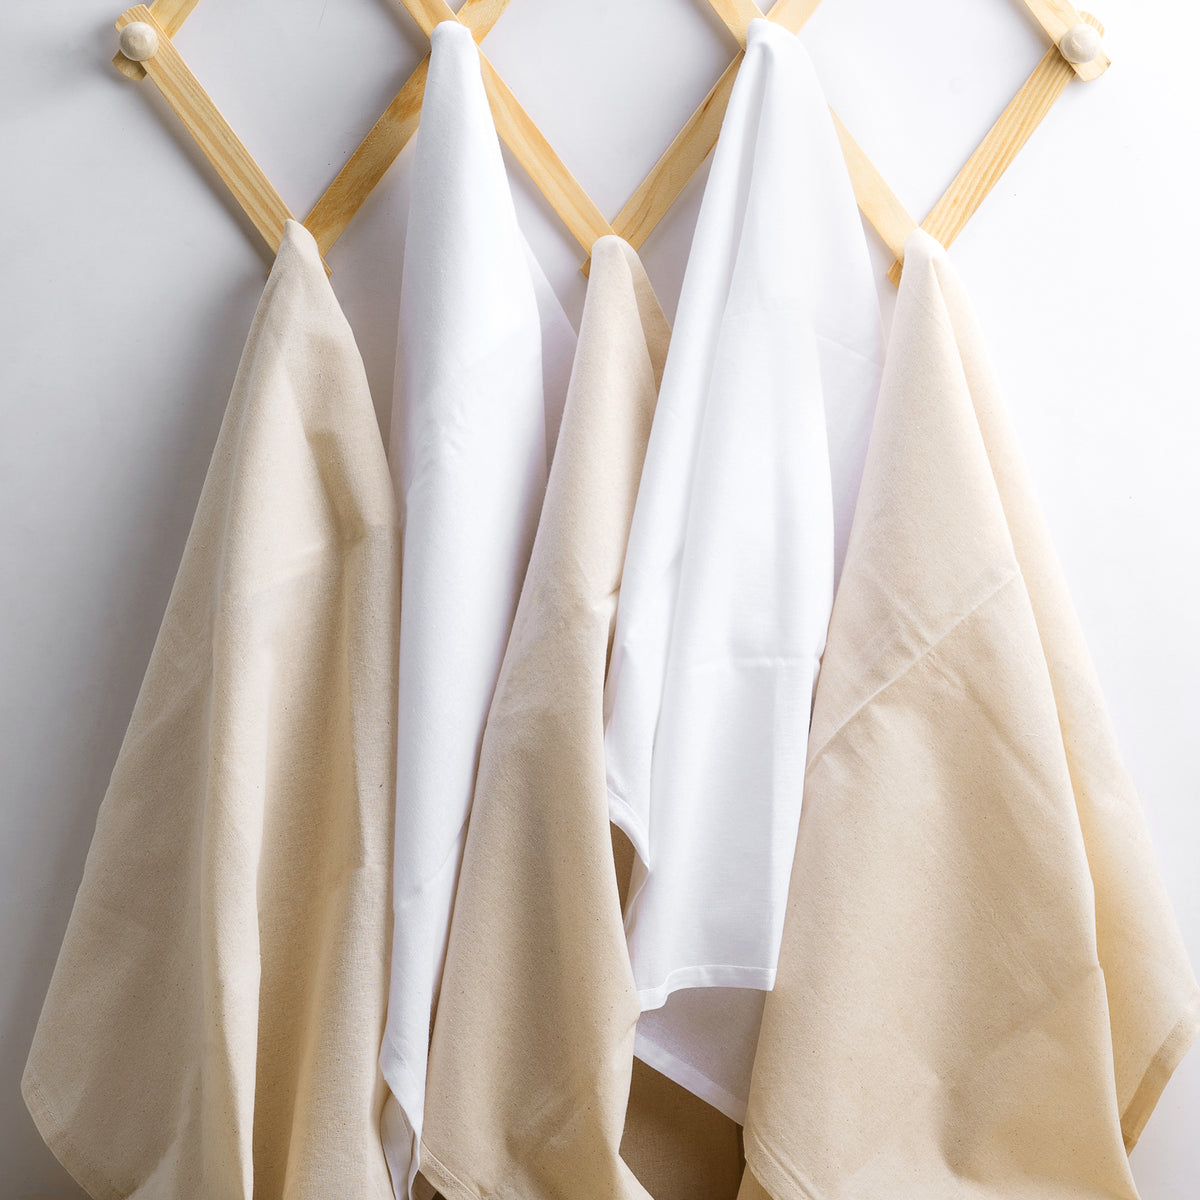 Craft Basics Natural Flour Sack Towel - 28 x 29